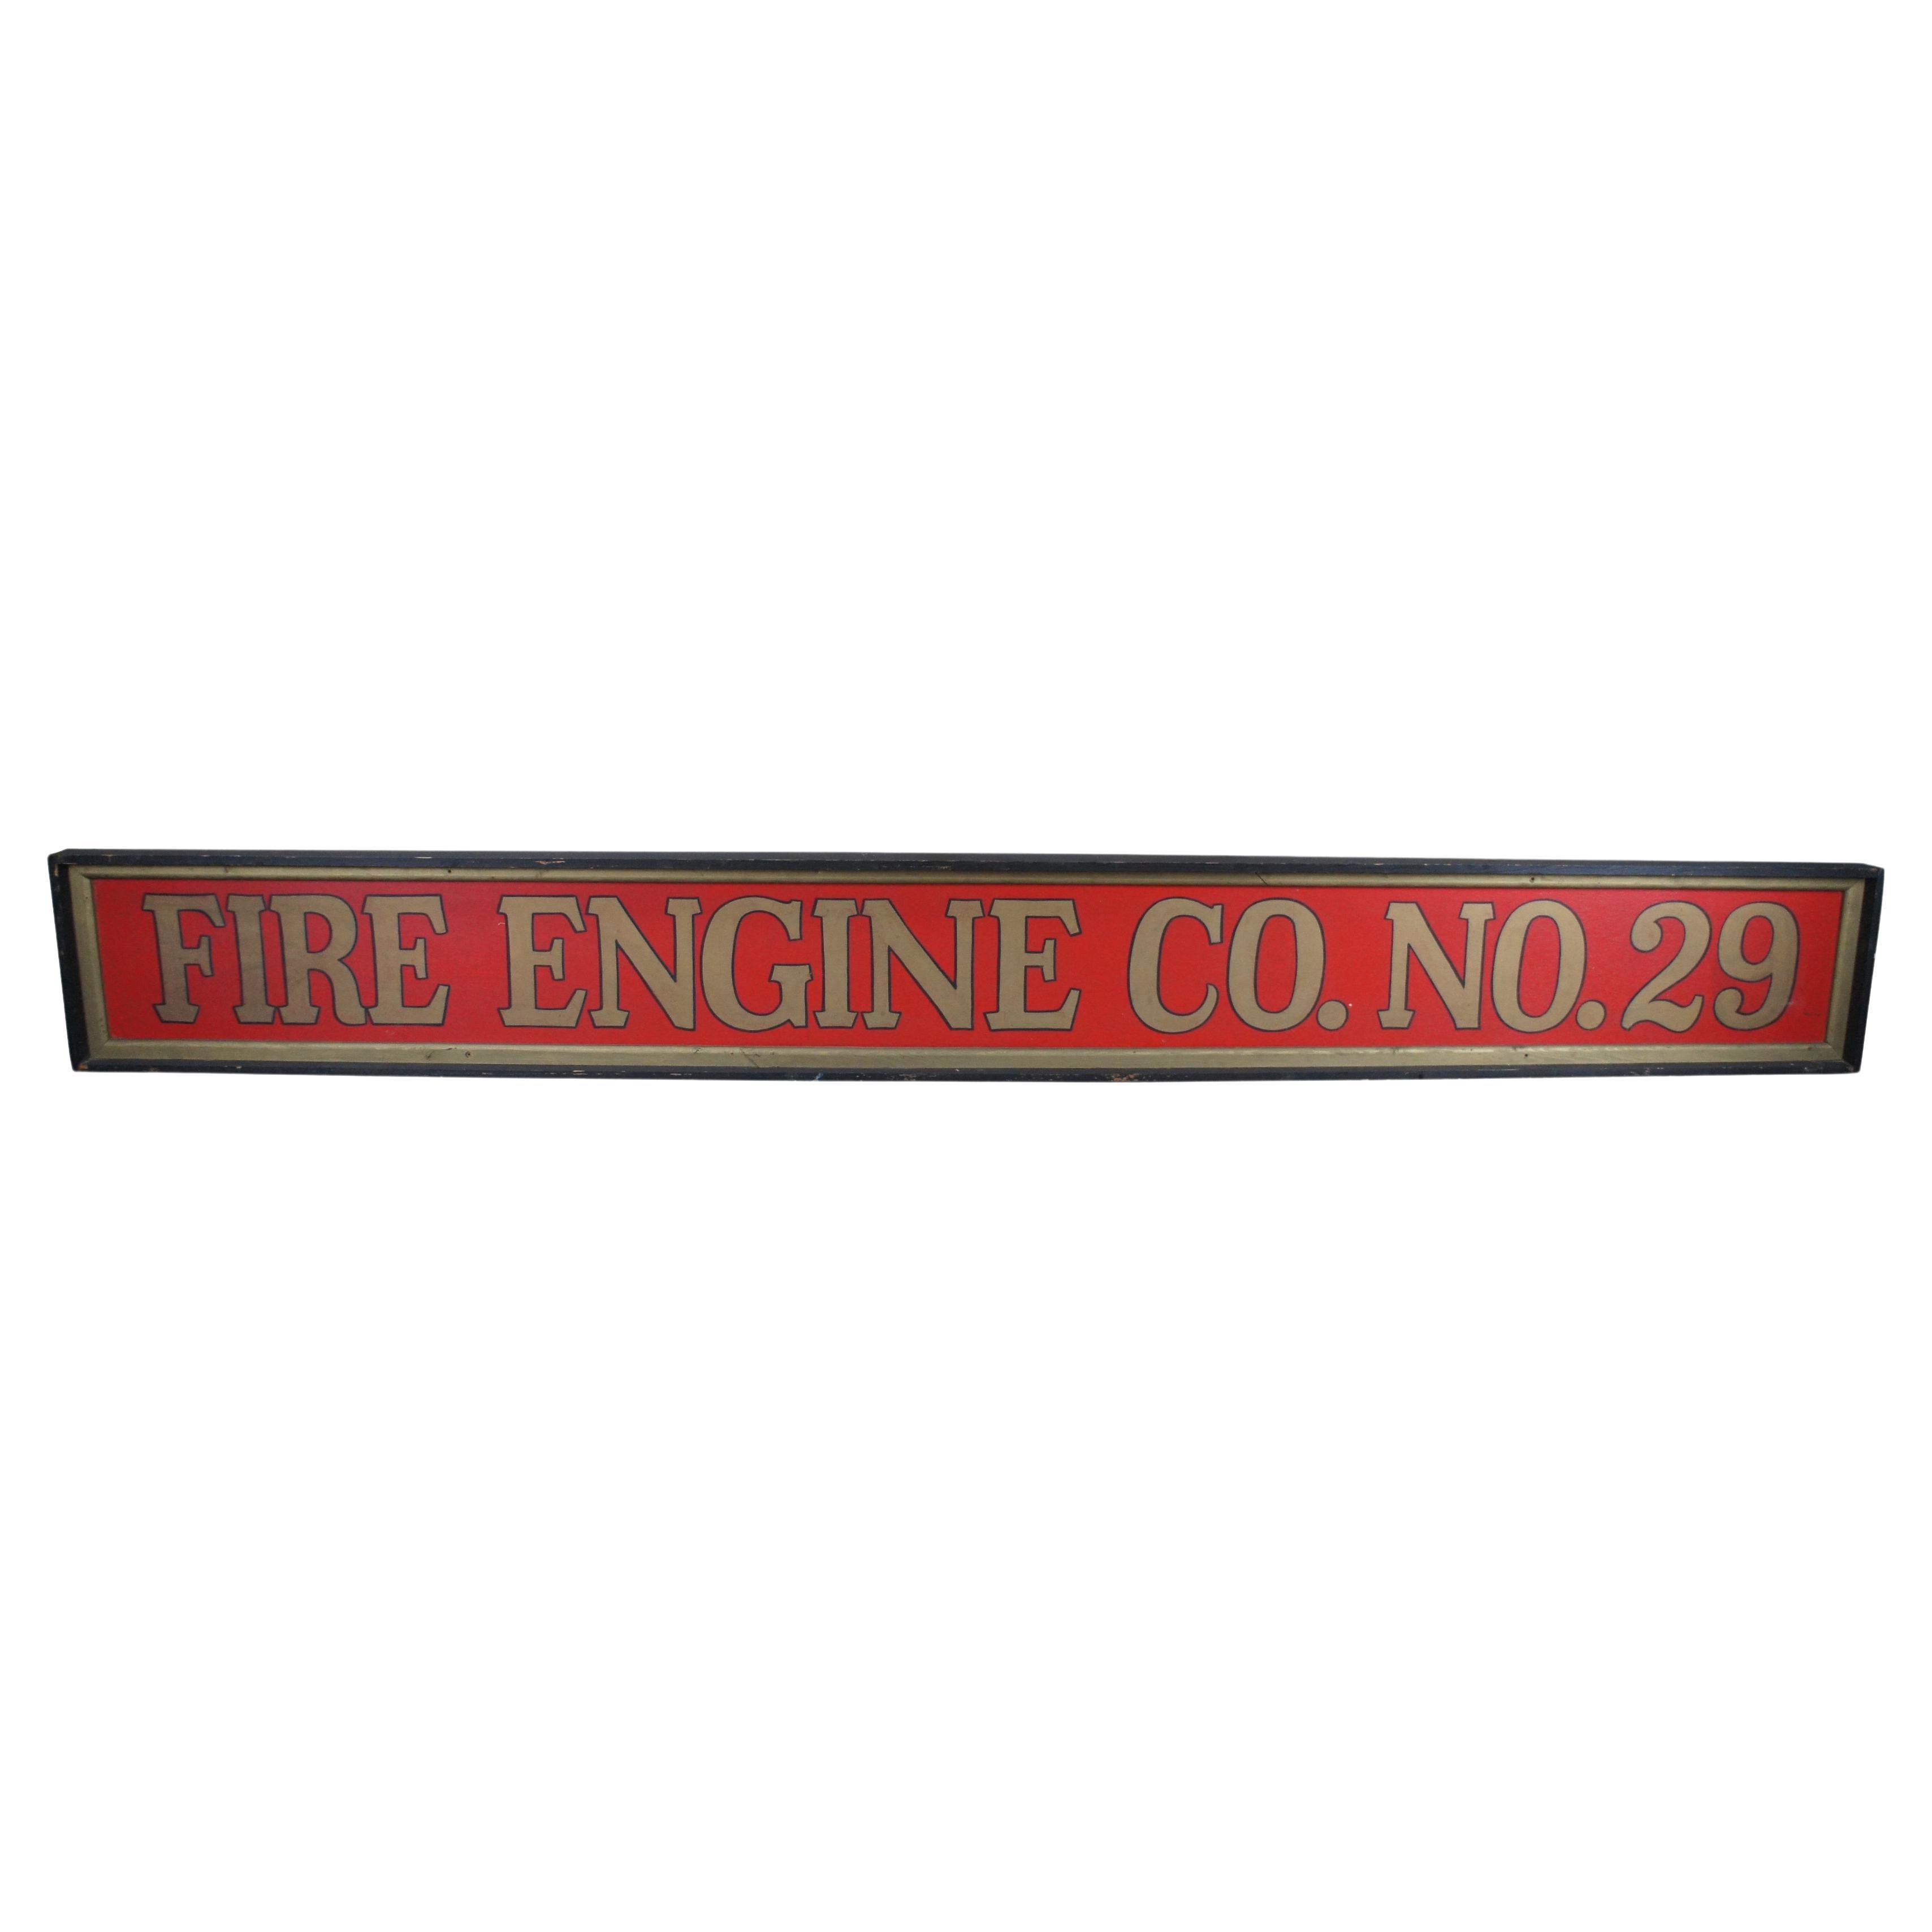 Monumental Vintage Fire Engline No. 29 Firefighter Advertising Sign 146" (panneau publicitaire pour pompiers)